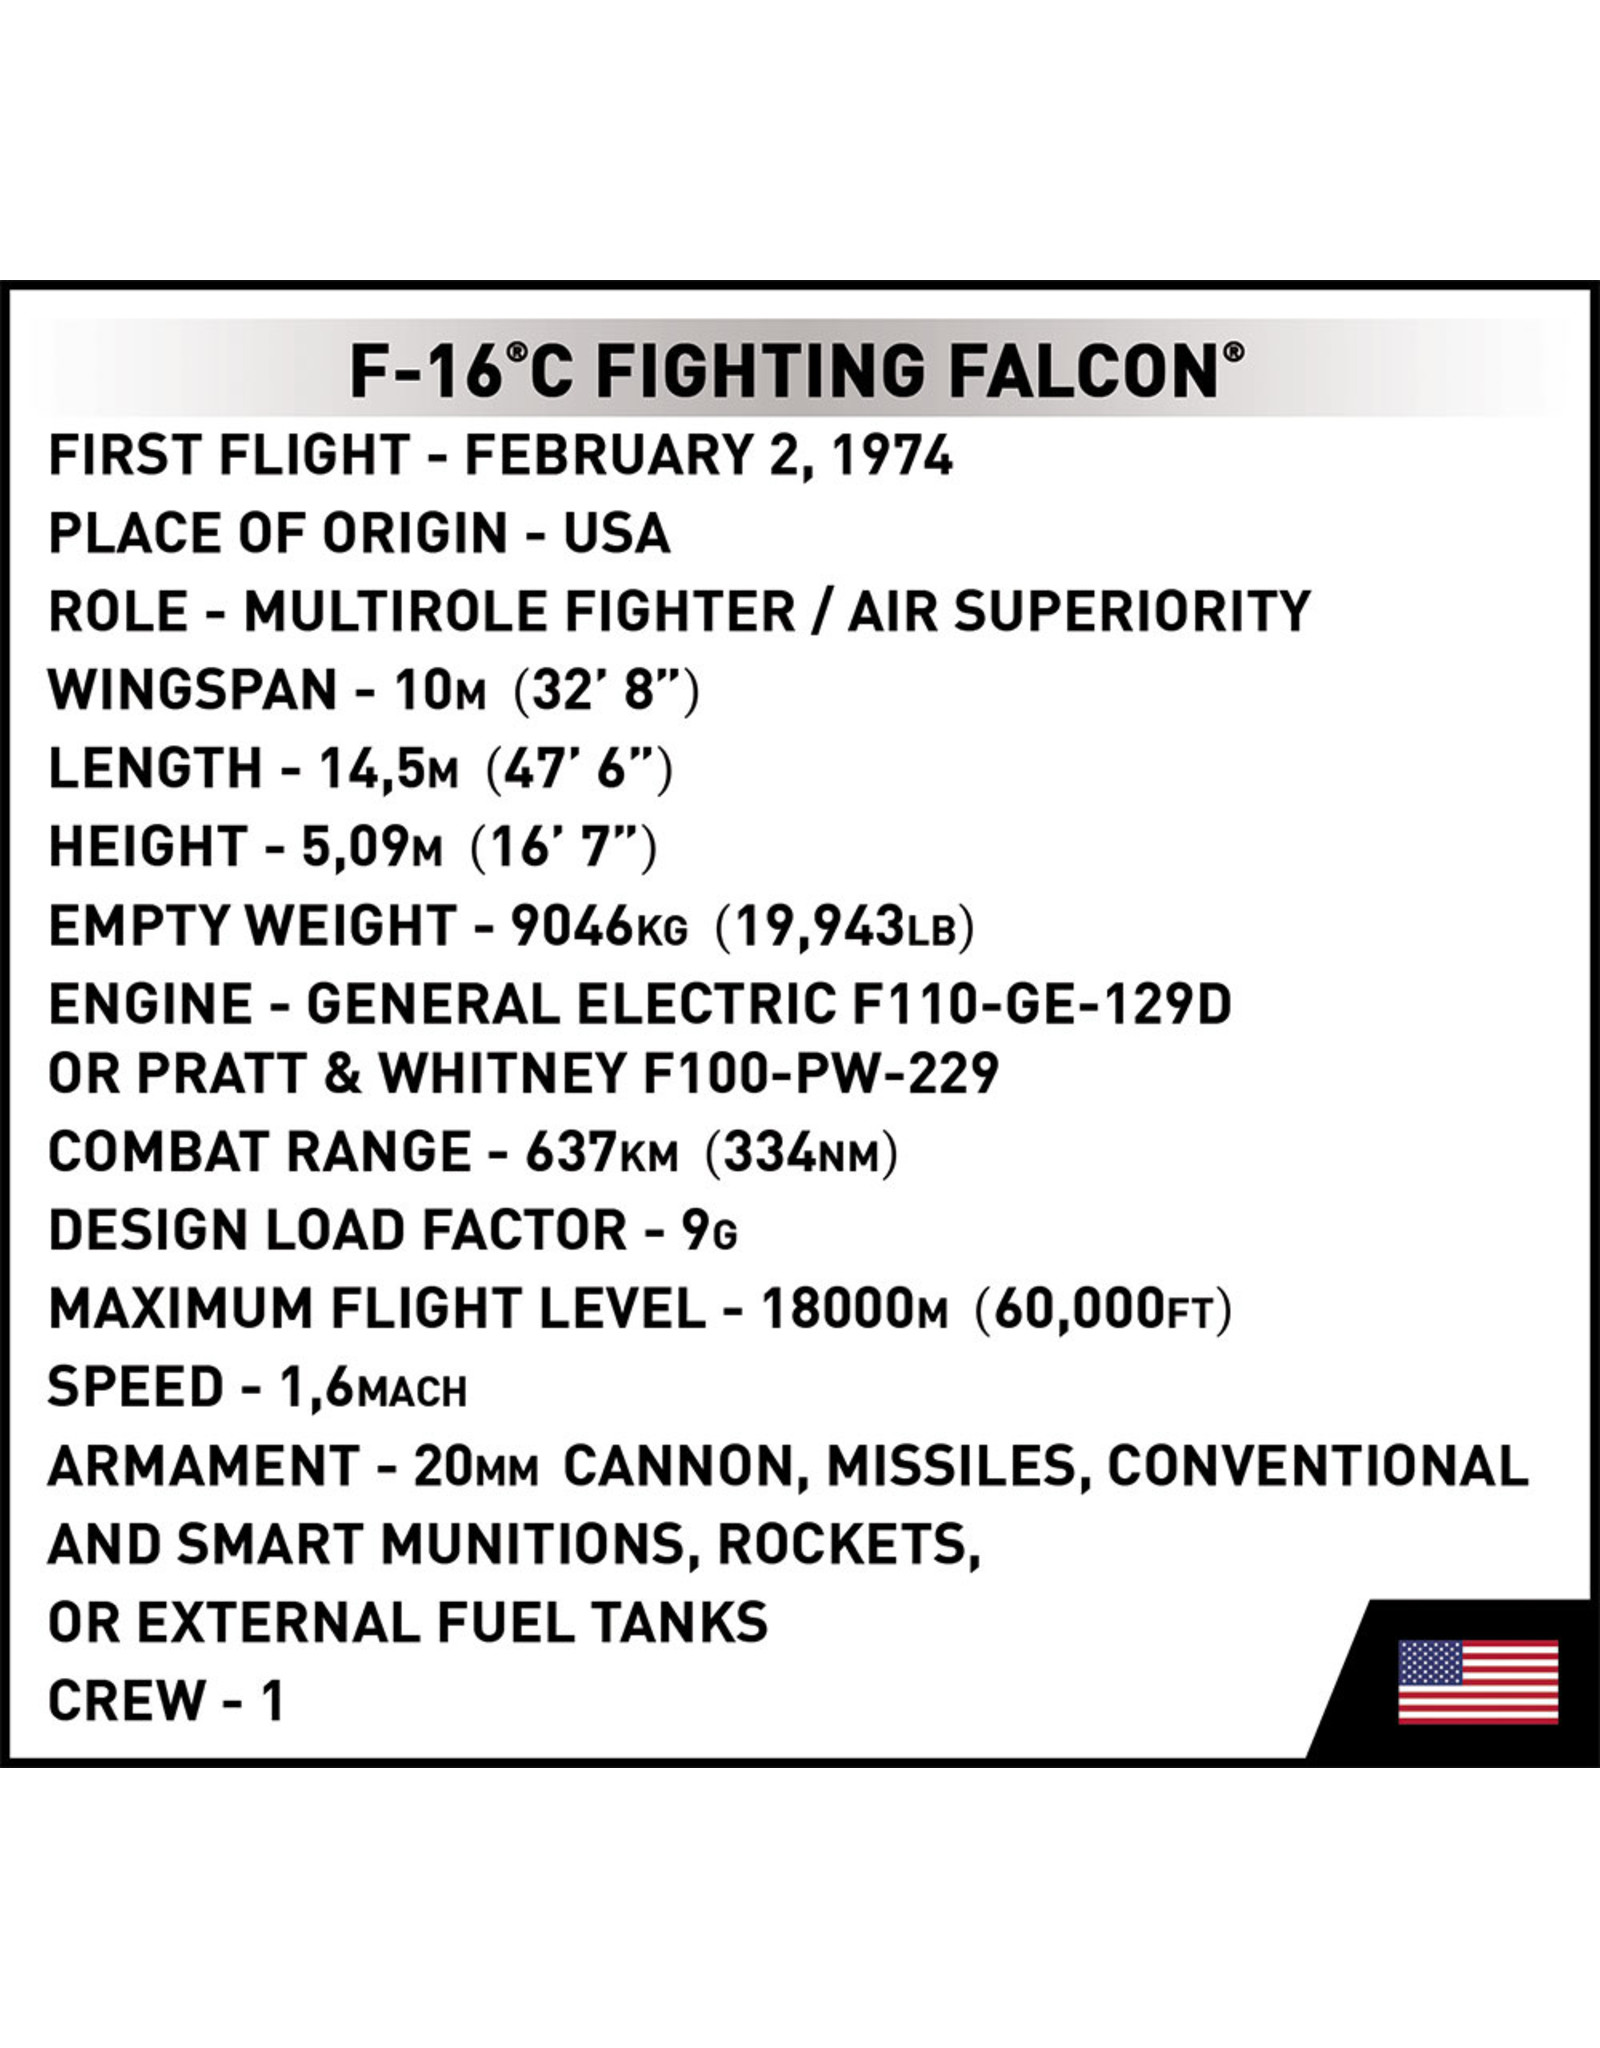 COBI COBI  5813 F-16C Fighting Falcon